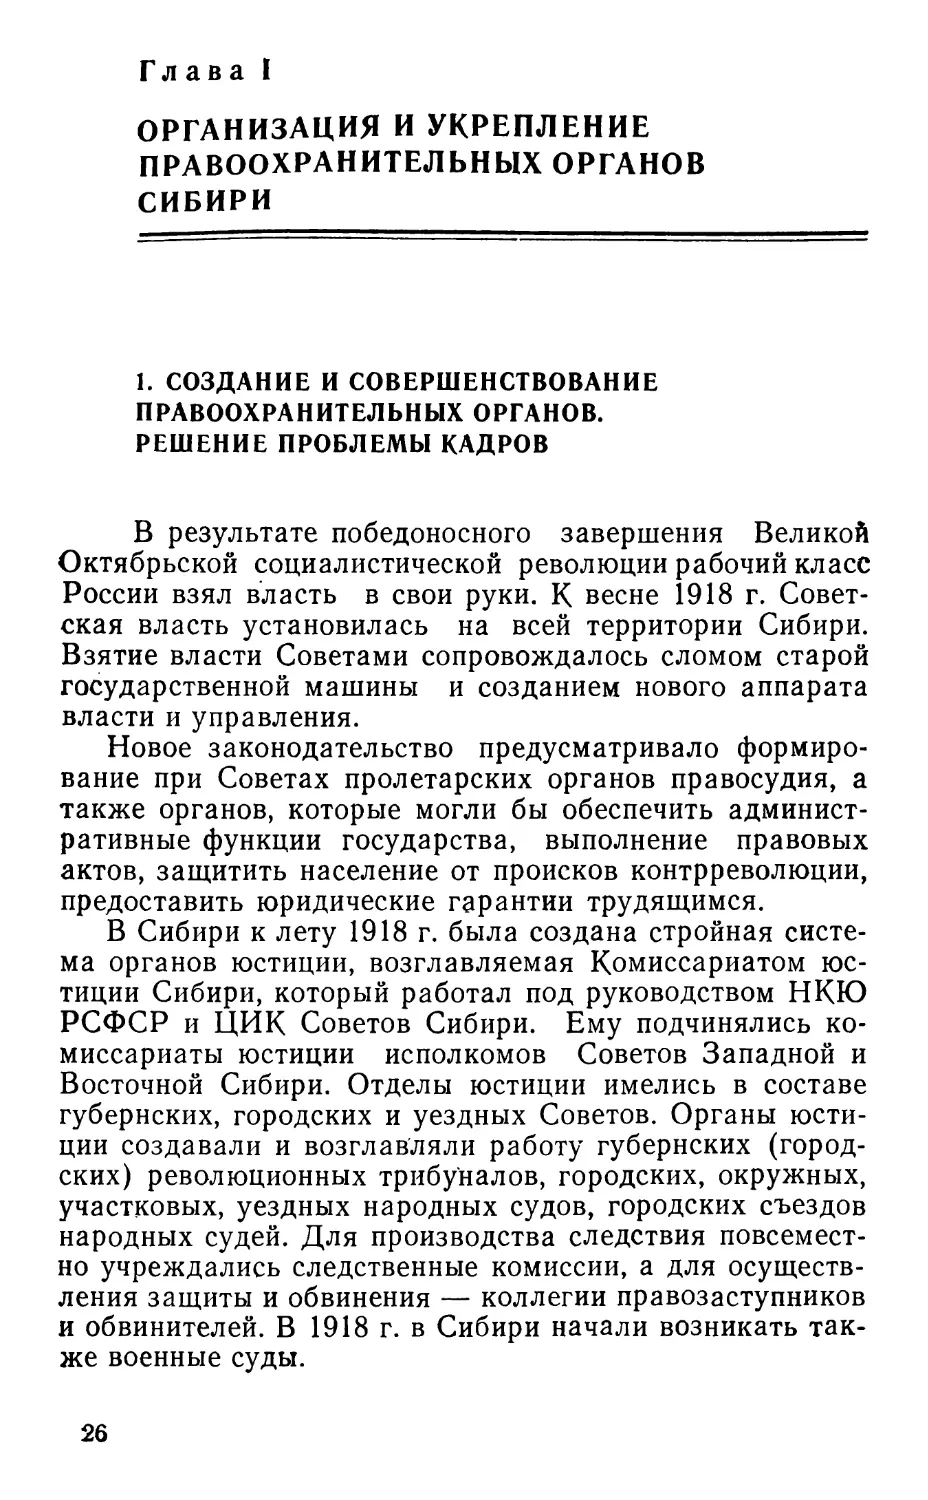 Глава I. Организация и укрепление правоохранительных органов Сибири